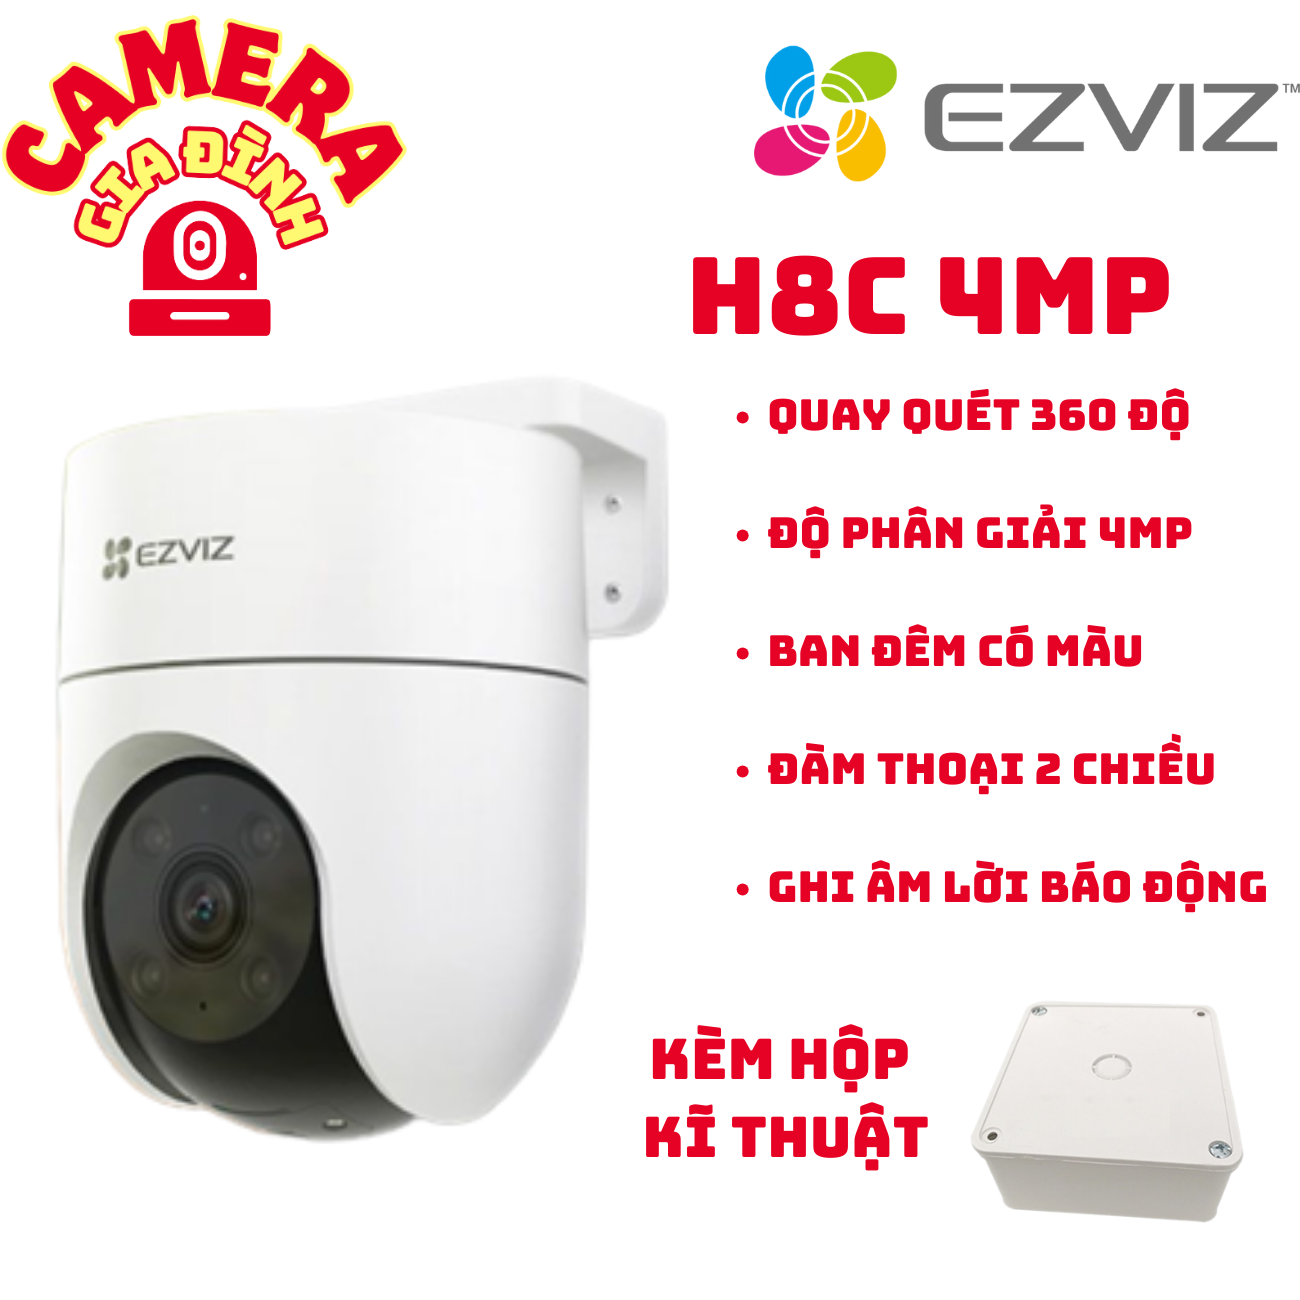 H8C 4MP Camera wifi Ezviz ngoài trời H8C 4MP 2K+ màu ban đêm, quay 360